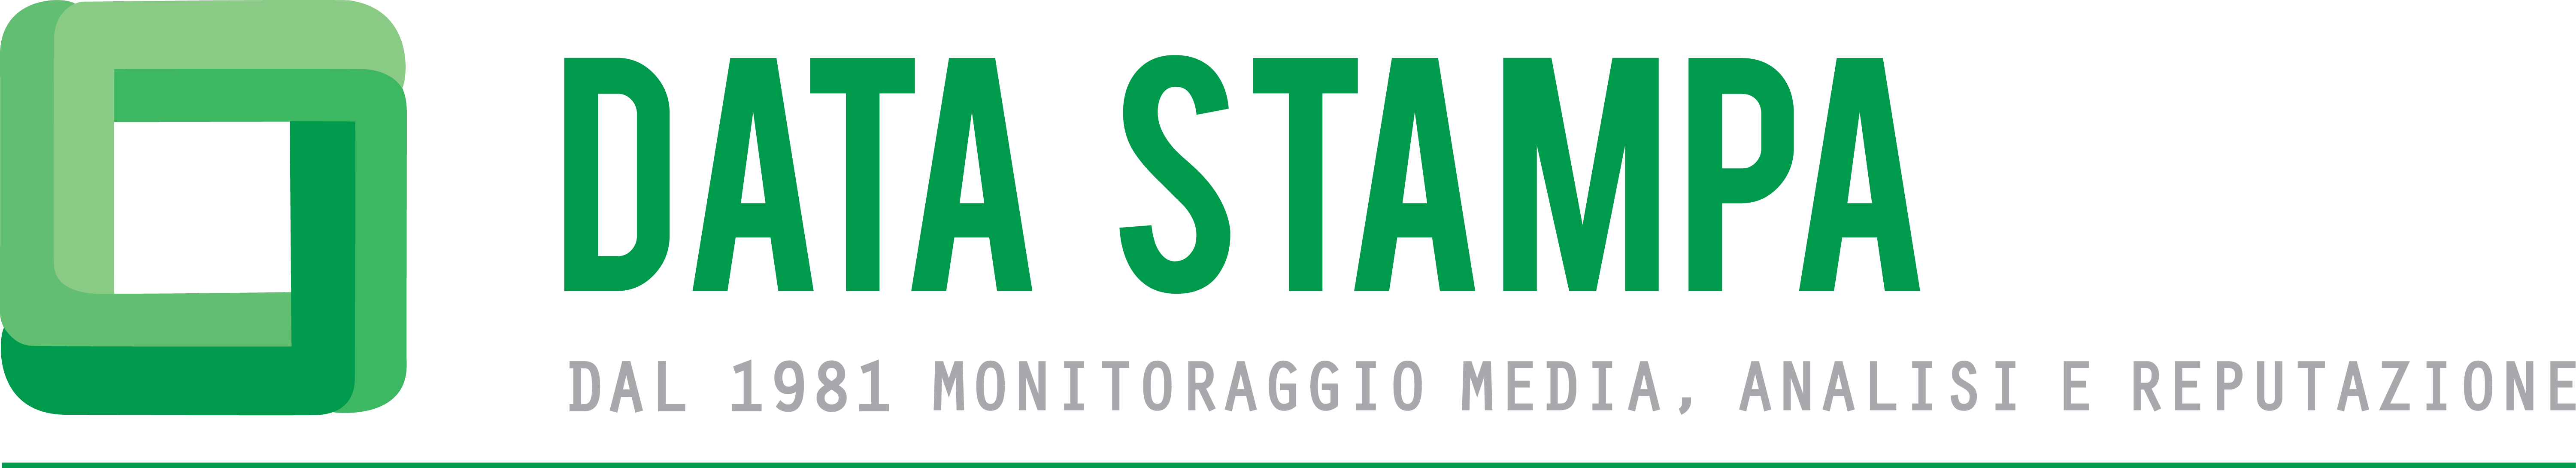 logo_datastampa